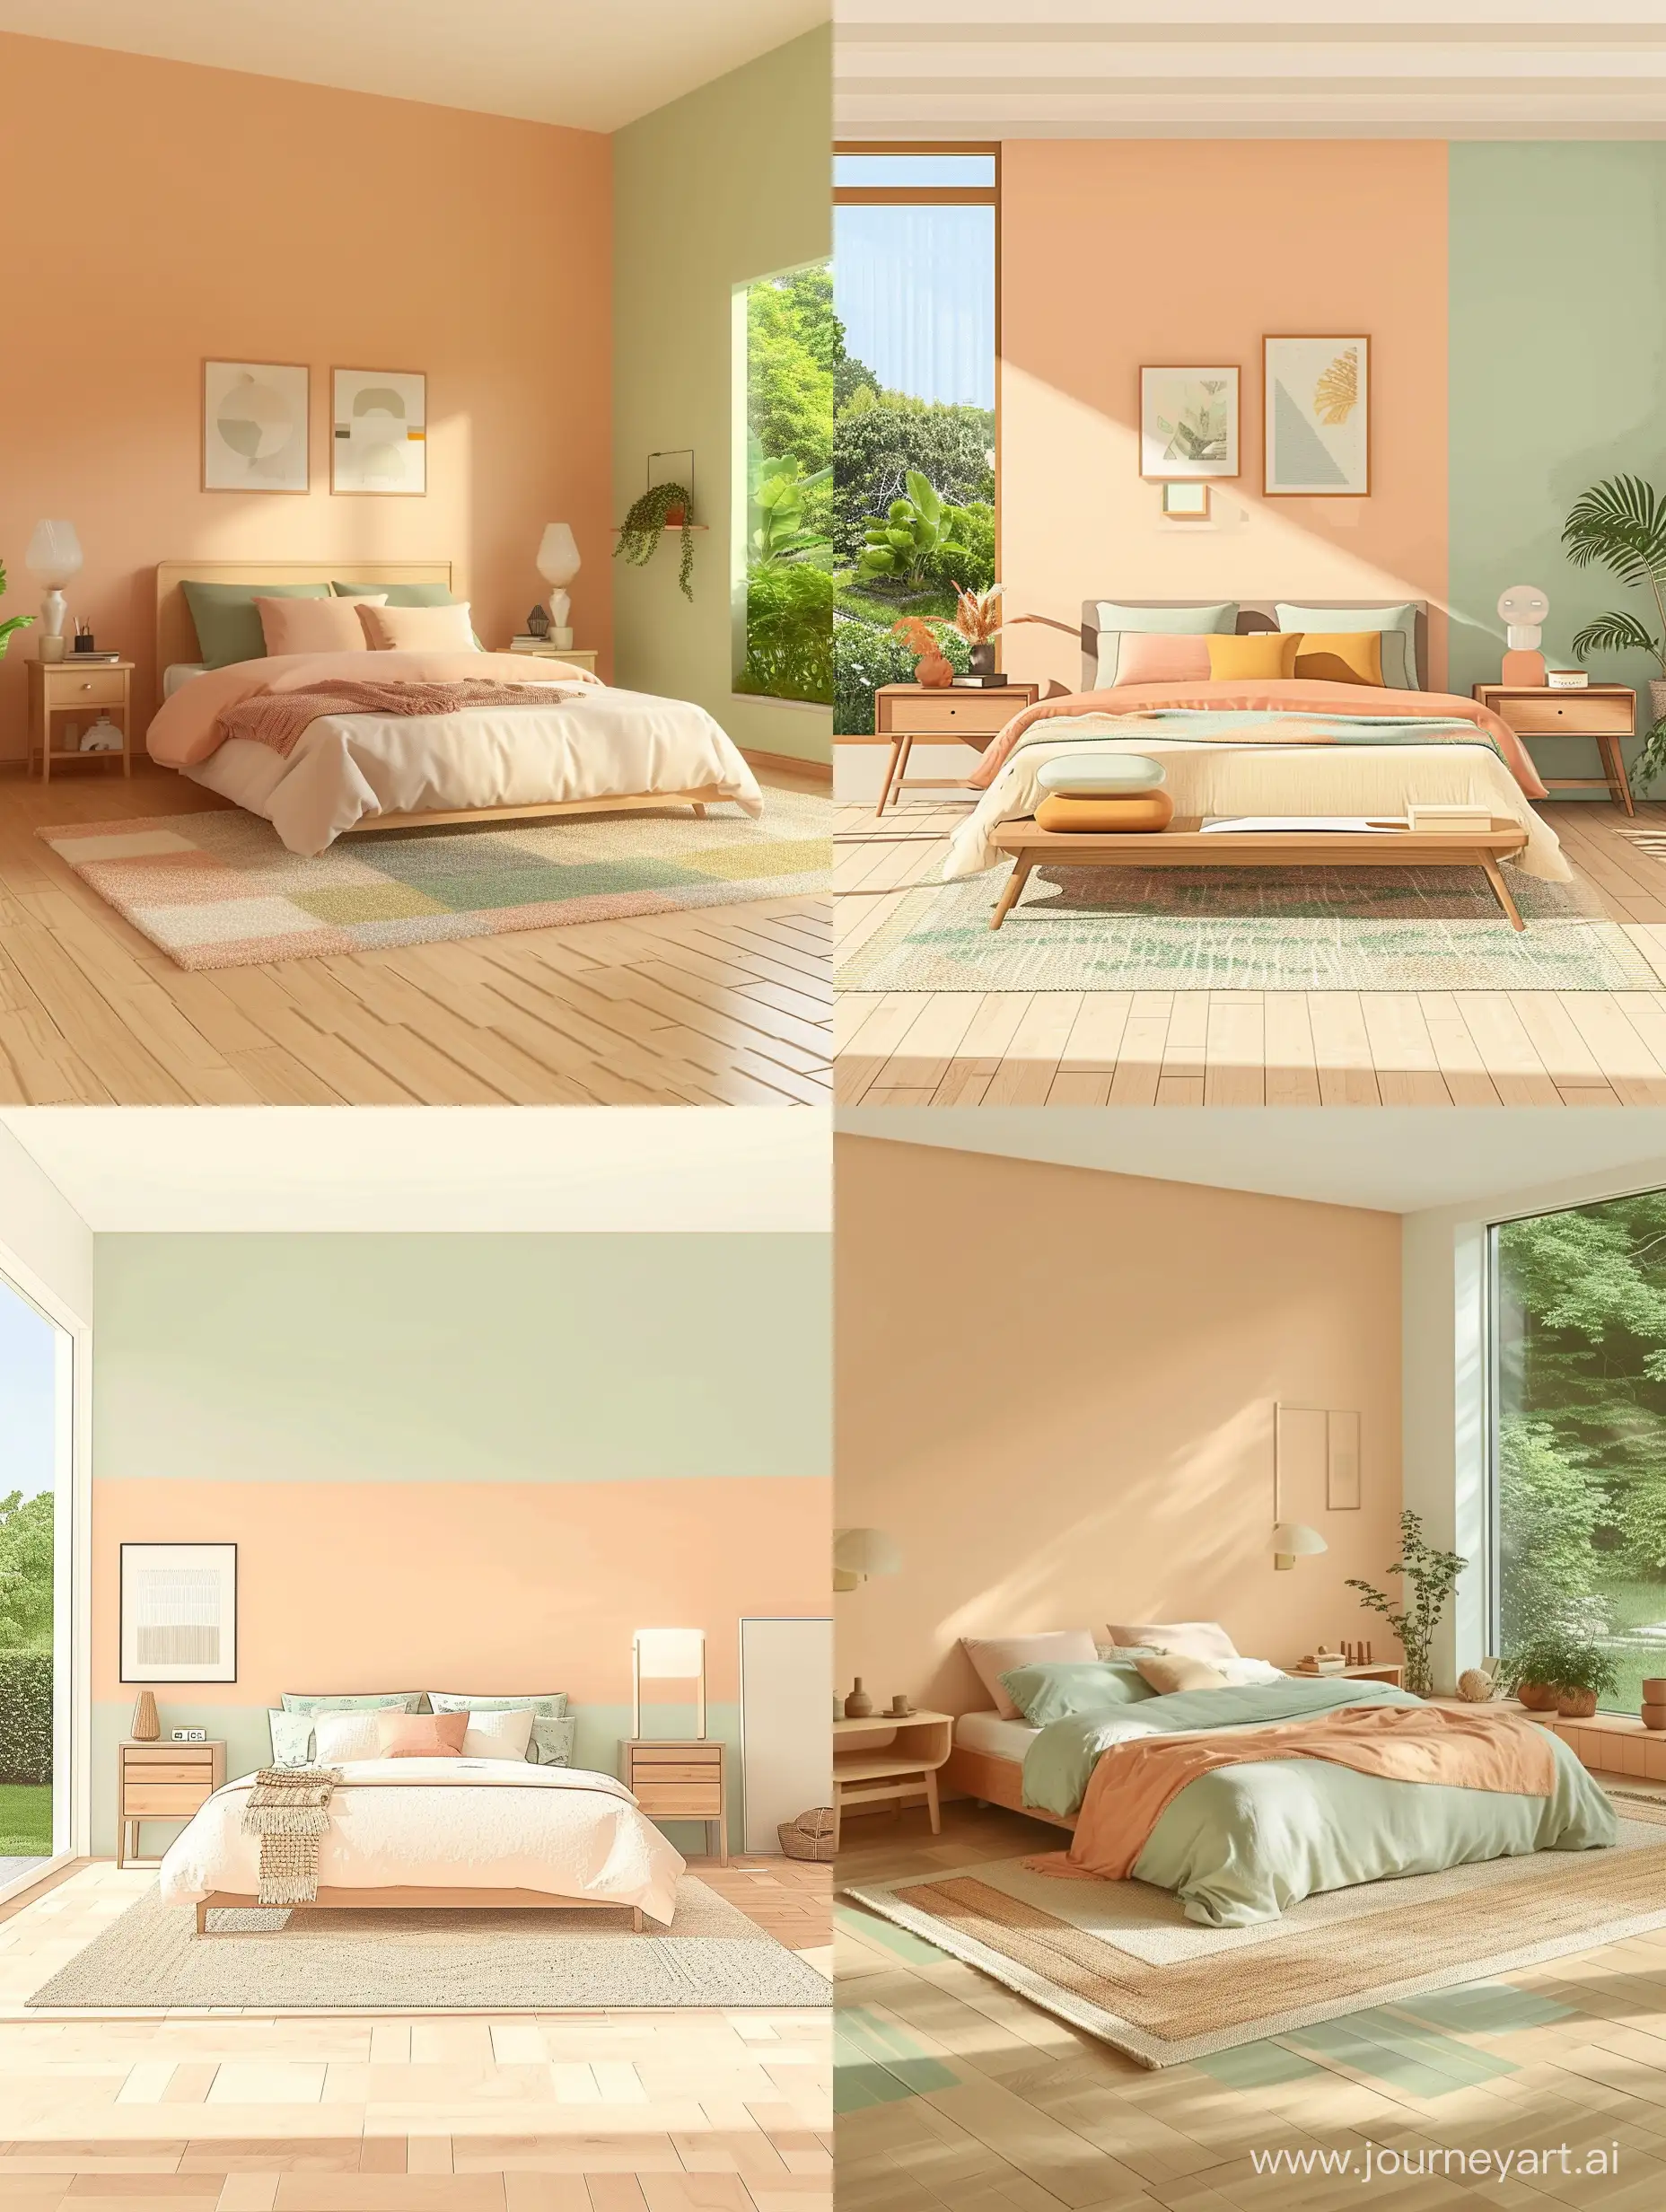 camera da letto semplice stile minimal letto due comodini un tappeto pavimento parquet chiaro finestra sul giardino  colore pesca beige verde chiaro 